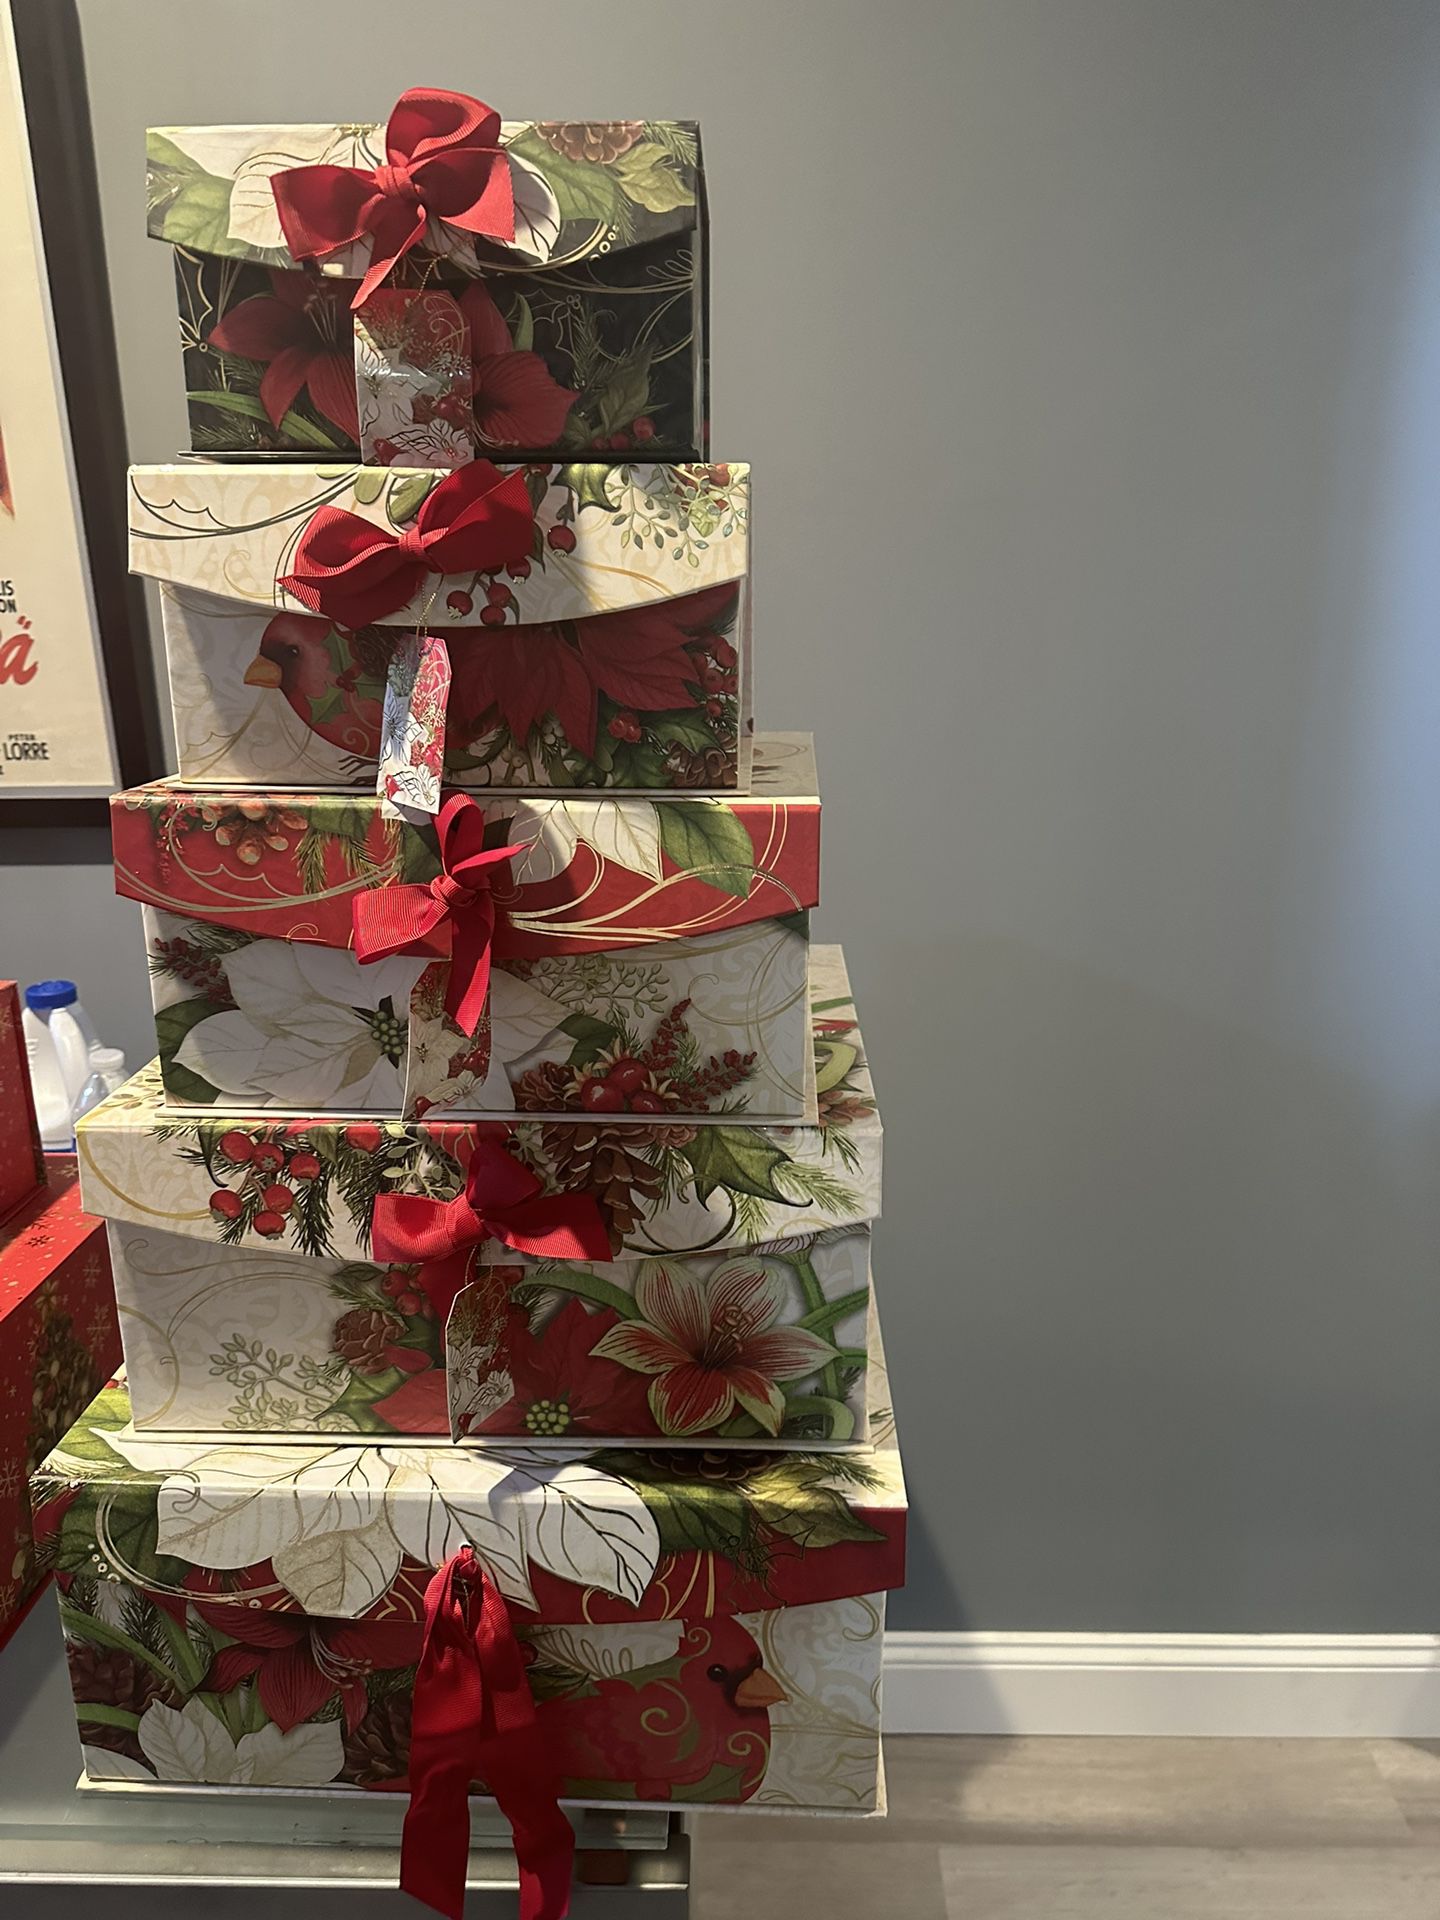 Christmas Gift Boxes..